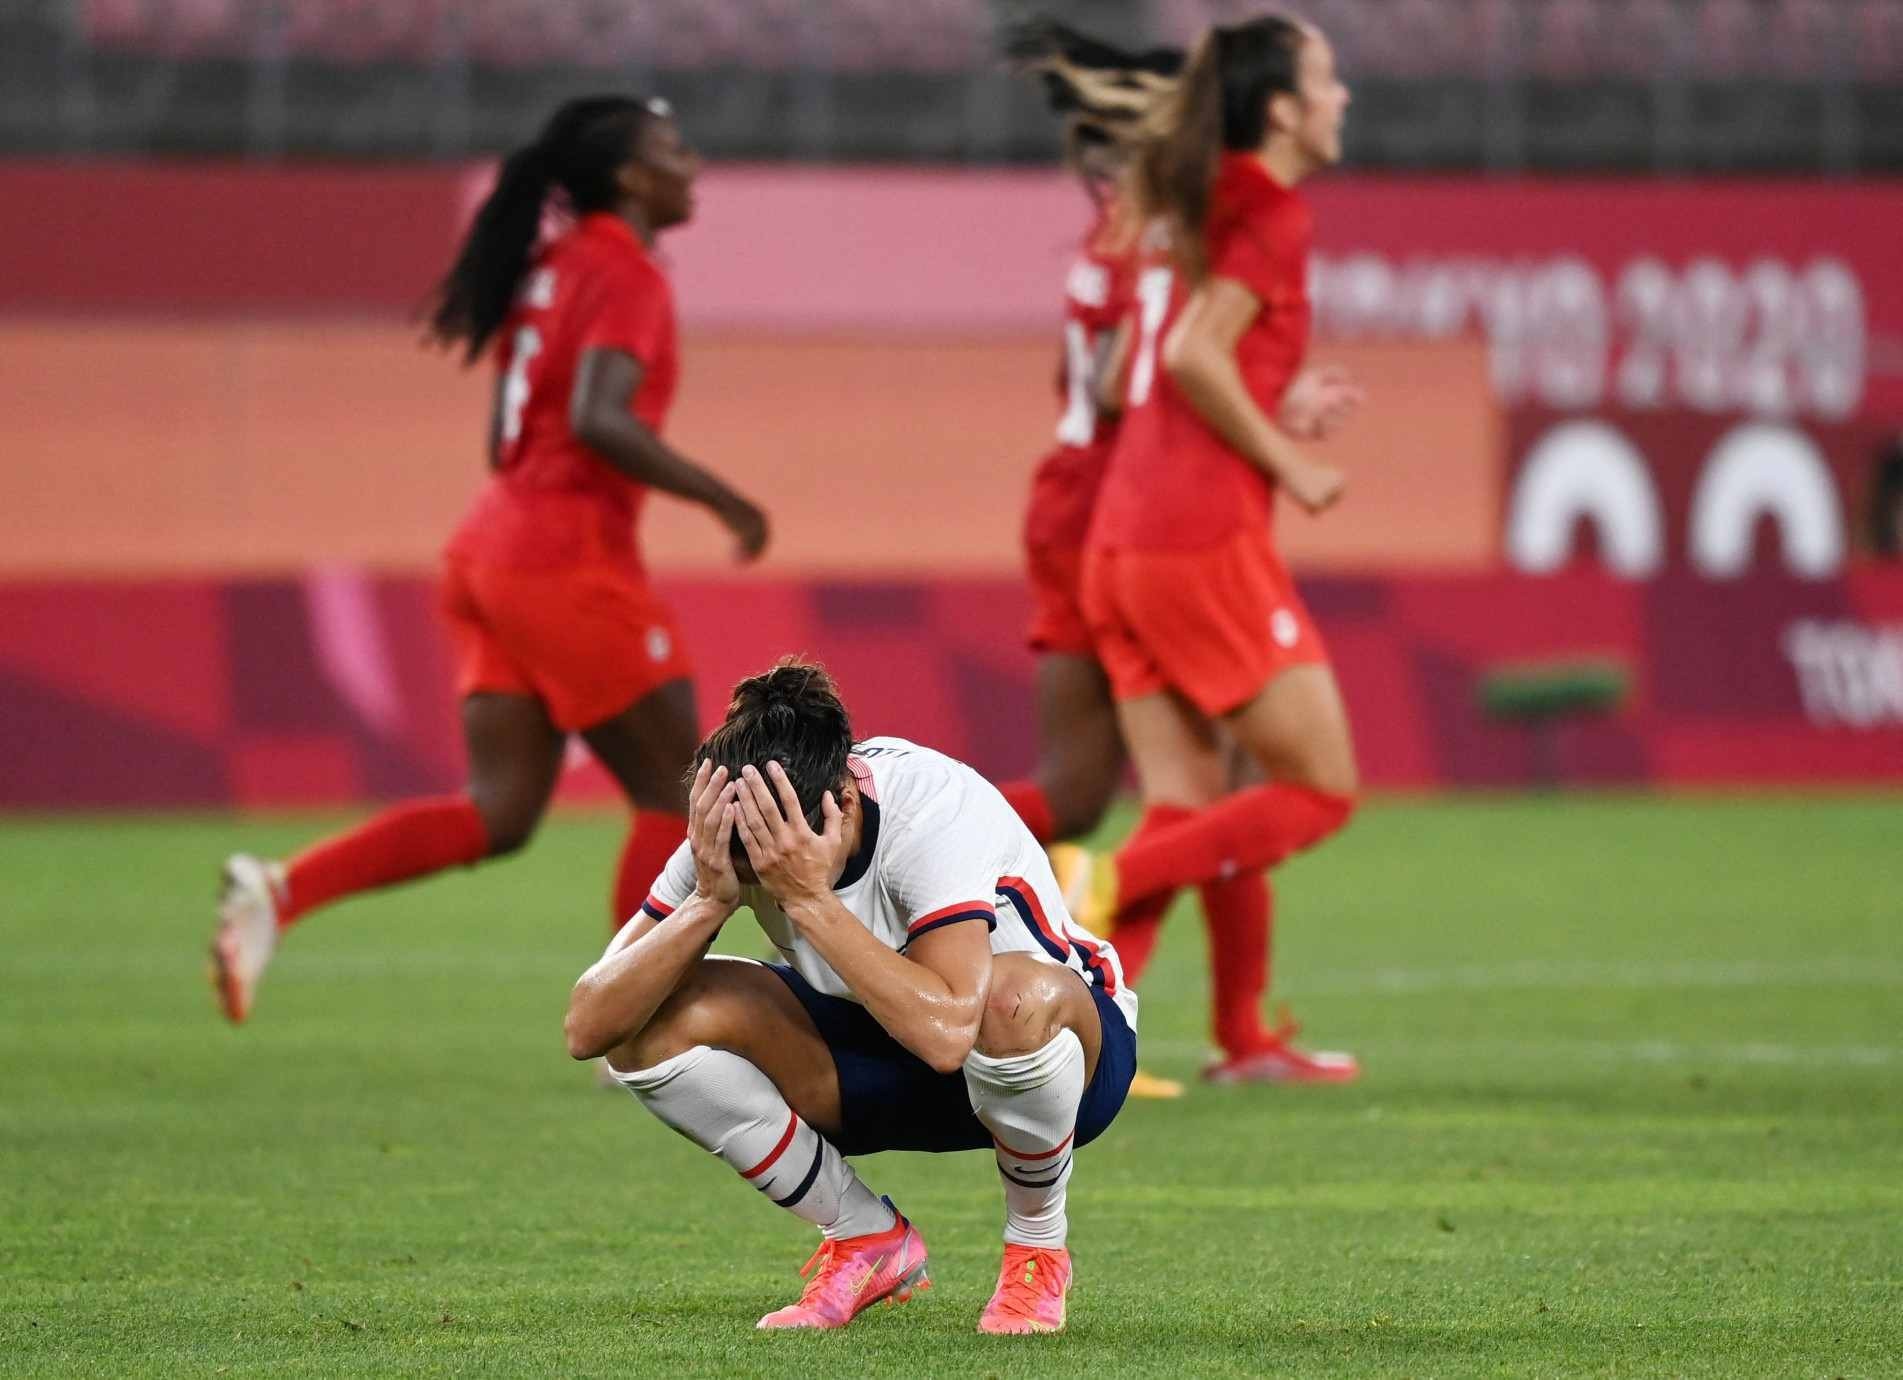 O Canadá venceu os Estados Unidos de Carli Lloyd (foto) e fará final contra a Suécia no futebol feminino